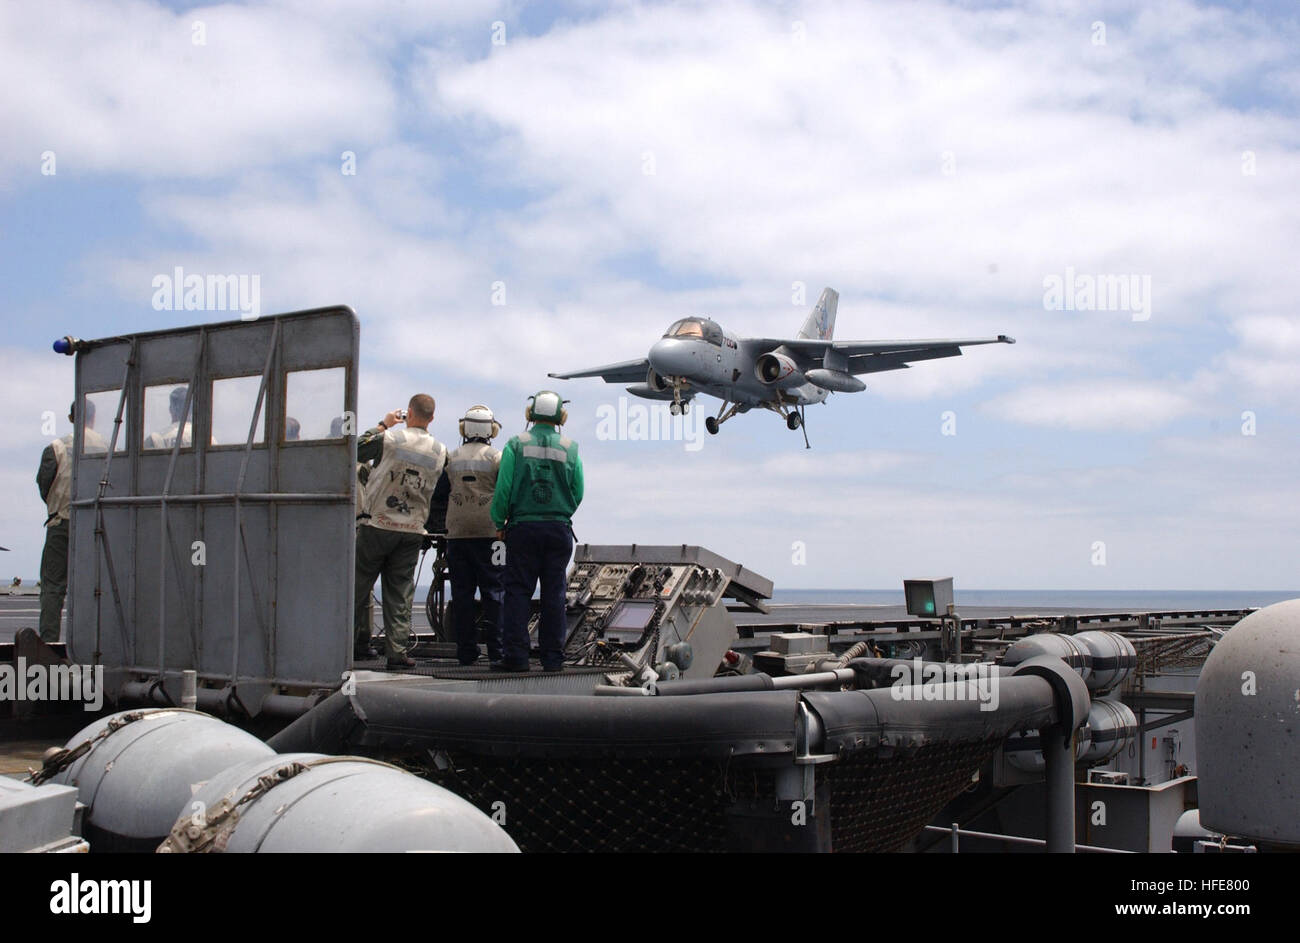 030501-N-6020P-017 de l'océan Pacifique (1 mai 2003) -- Le Président George W. Bush pièges avec succès à bord du USS ABRAHAM LINCOLN (CVN 72) dans un S-3B Viking affecté à la mer bleue de loups de l'Escadron de contrôle trois cinq (VS-35) désigné '1' de la marine. Le président Bush est le premier président de séance pour piéger à bord d'un porte-avions en mer. Le Président est d'une visite à bord du navire pour rencontrer les marins et s'adresser à la nation comme Lincoln se prépare à retourner d'un 10 mois de déploiement dans le golfe Persique dans le cadre de l'opération Iraqi Freedom. U.S. Navy photo by Photographer's Mate Airman Gabr Banque D'Images